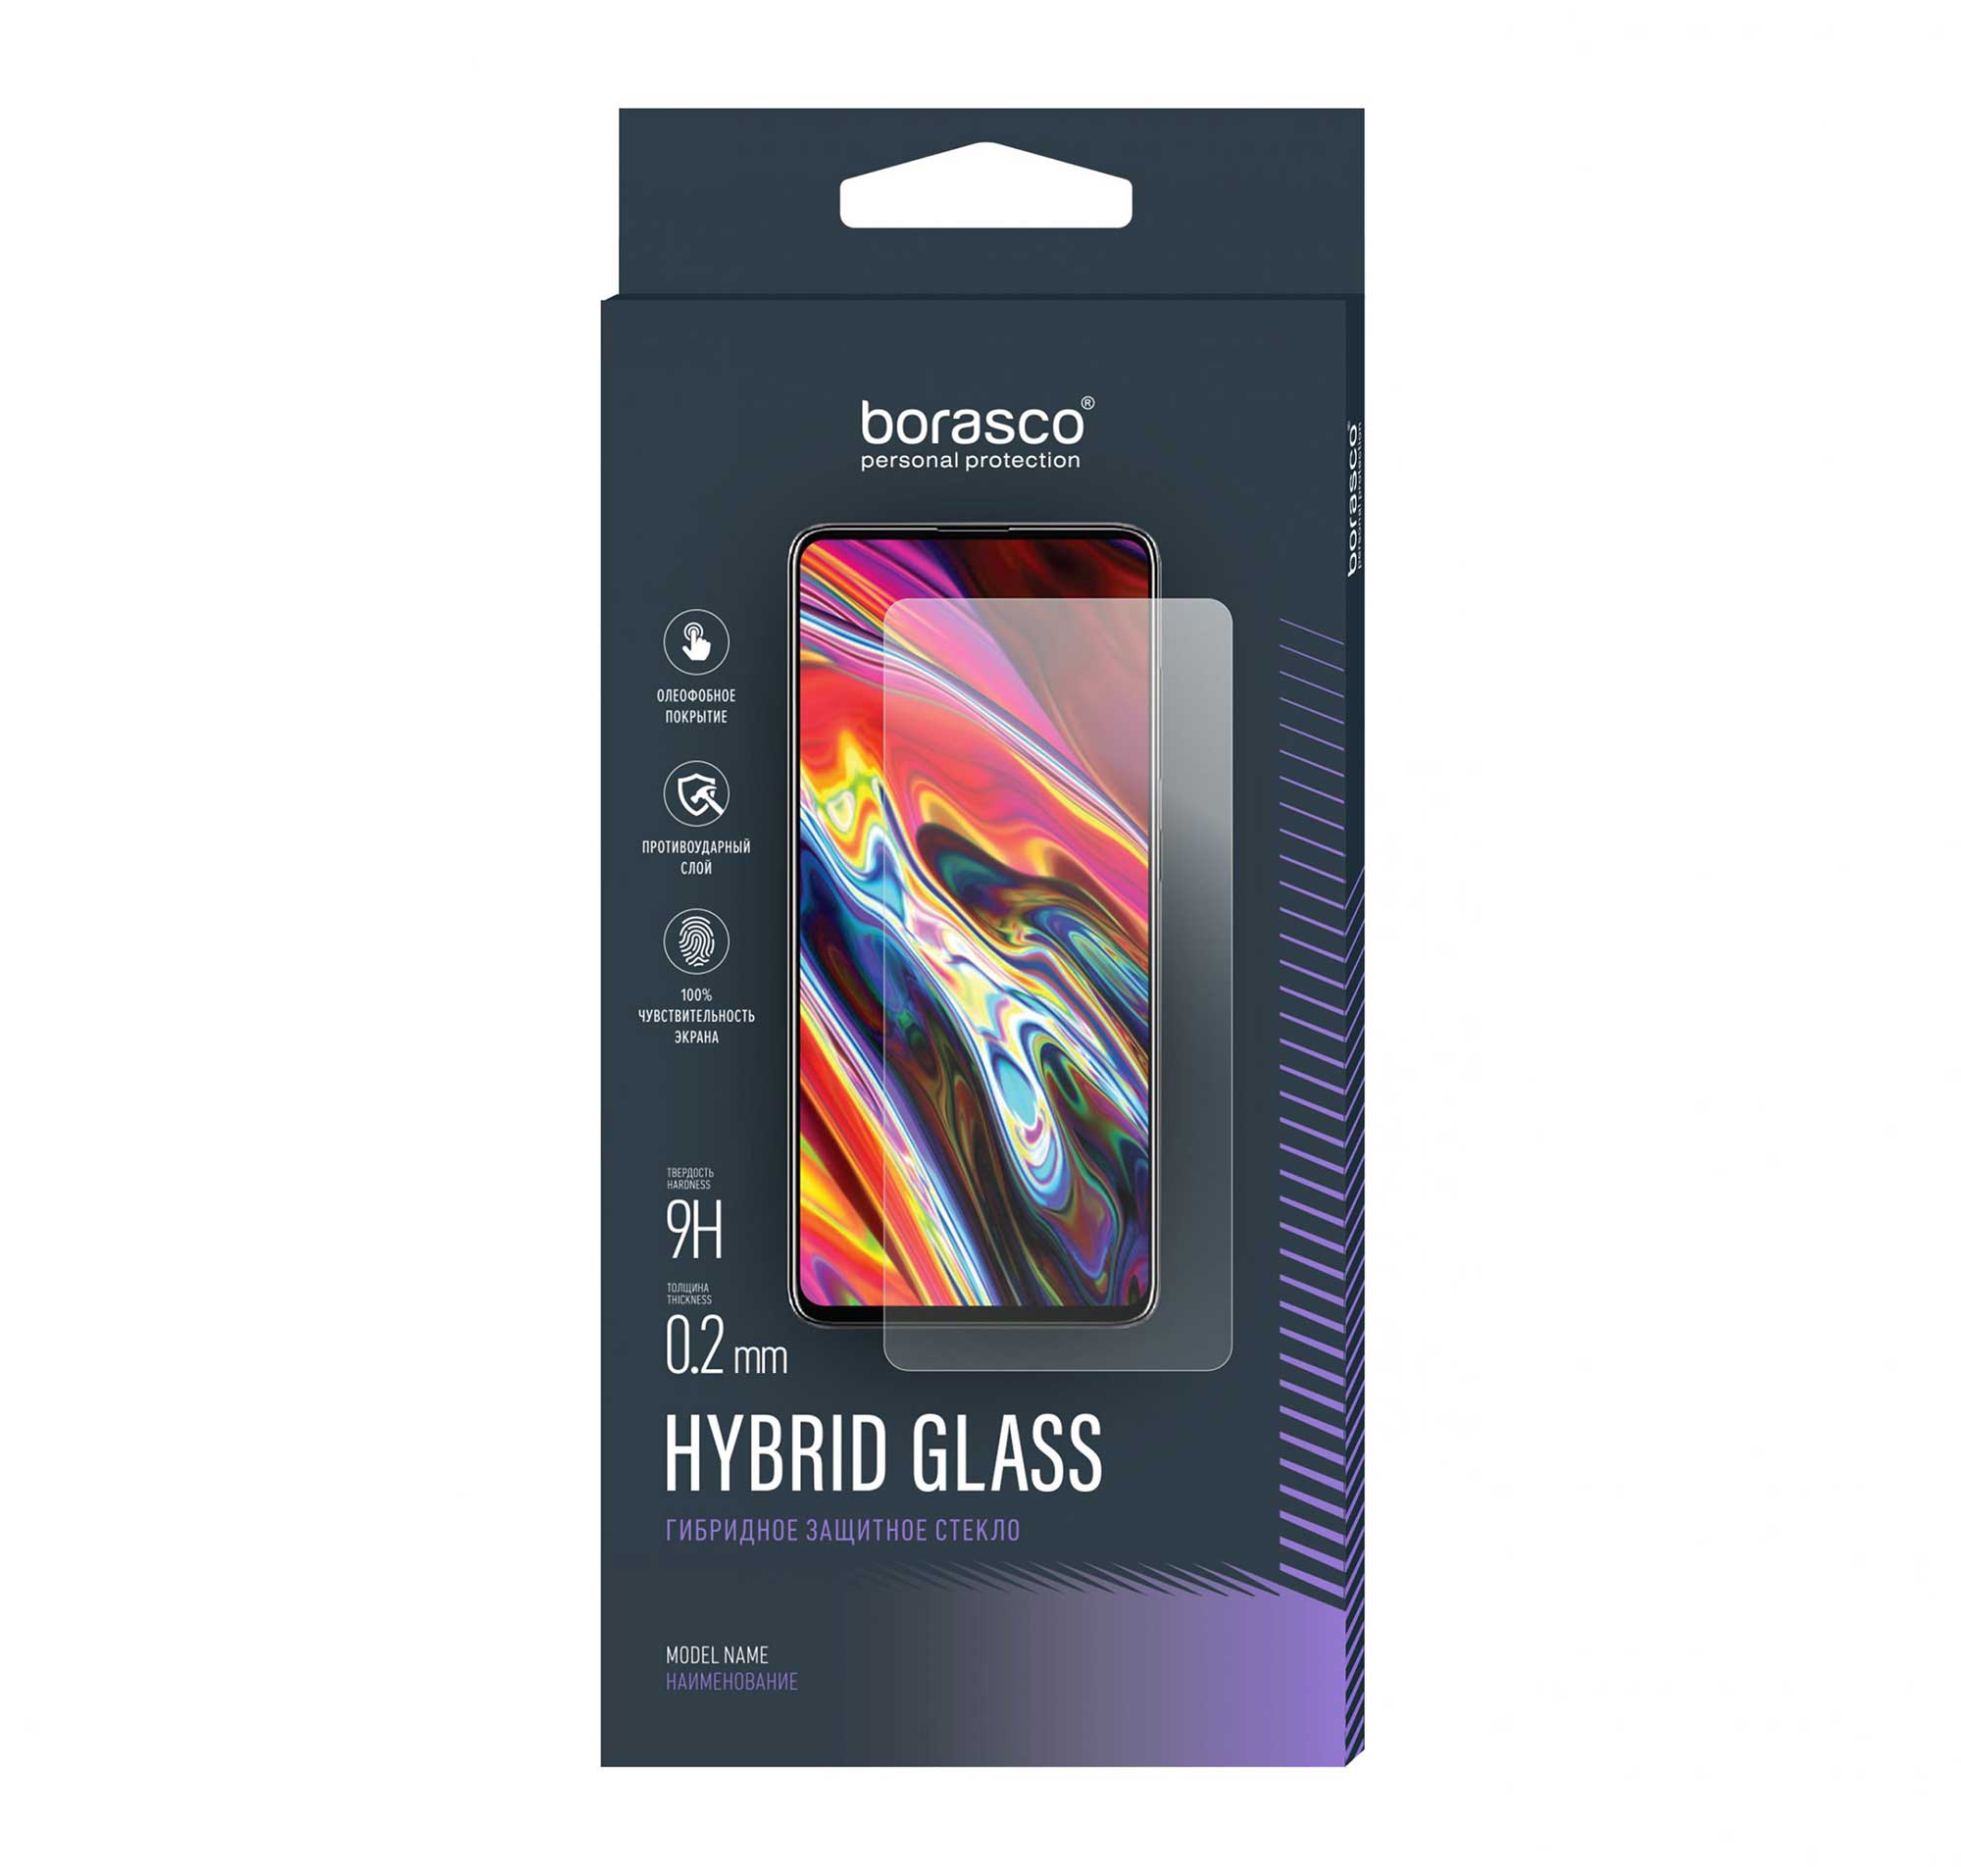 Защитное стекло Hybrid Glass для Google Pixel 4a 5G защитное стекло для смартфона krutoff google pixel 4a 5g